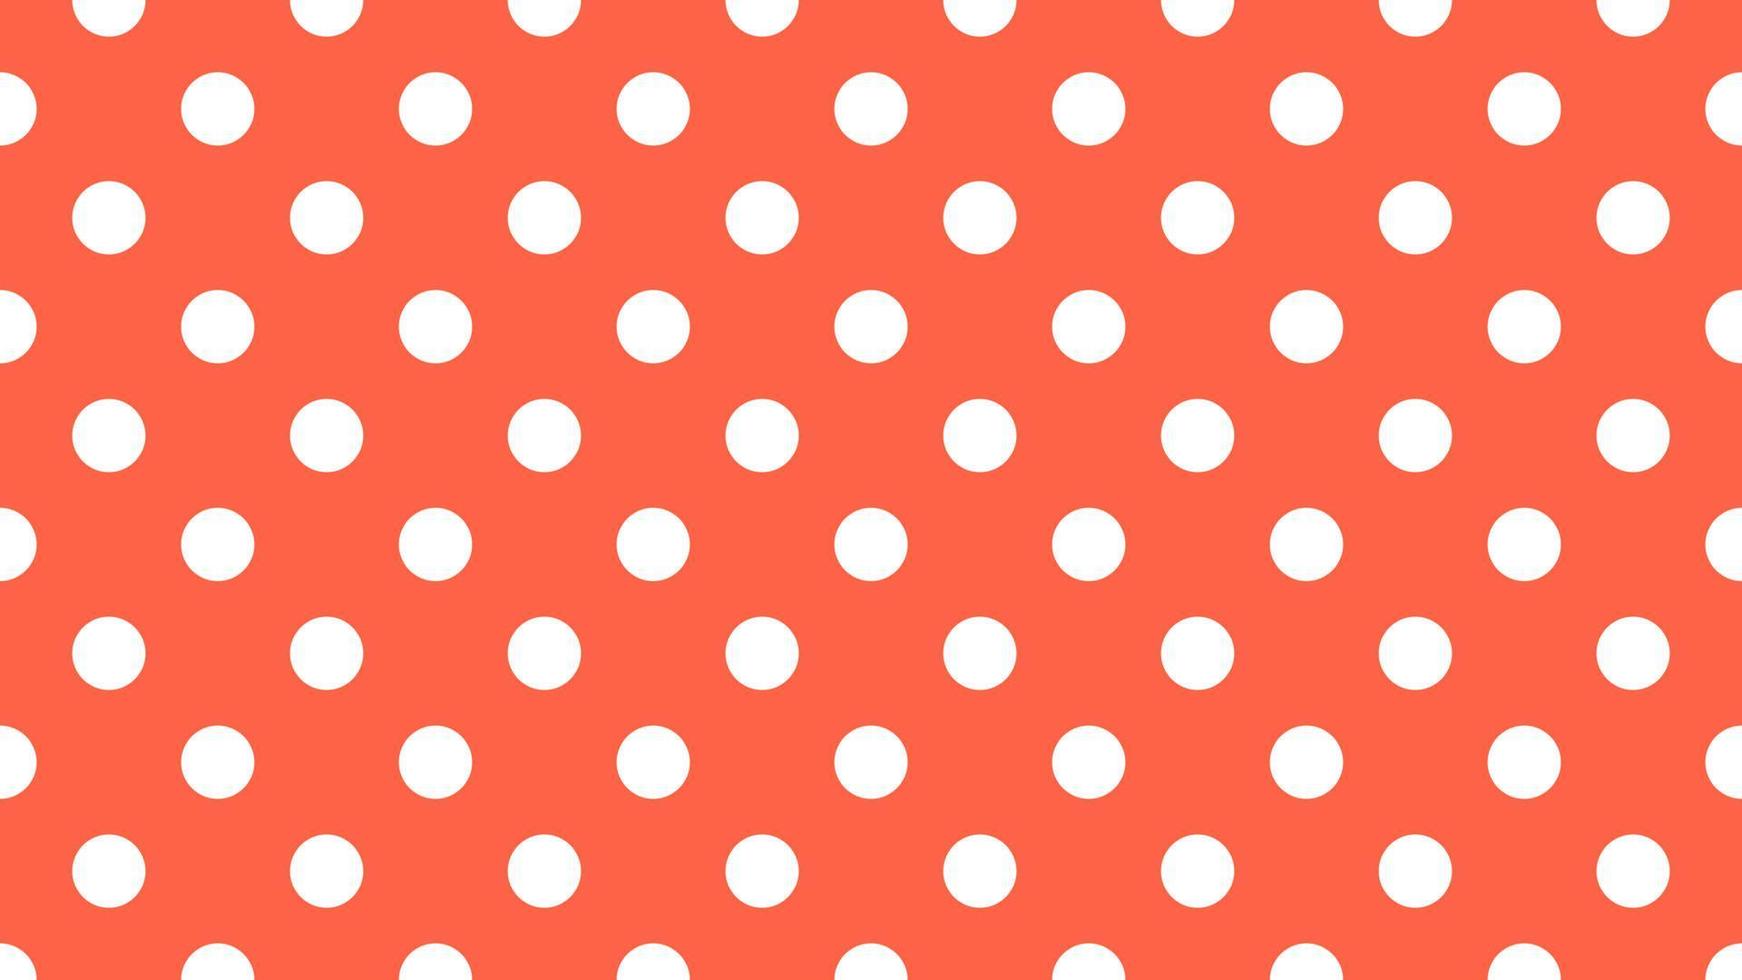 Weiß Farbe Polka Punkte Über Tomate Orange Hintergrund vektor